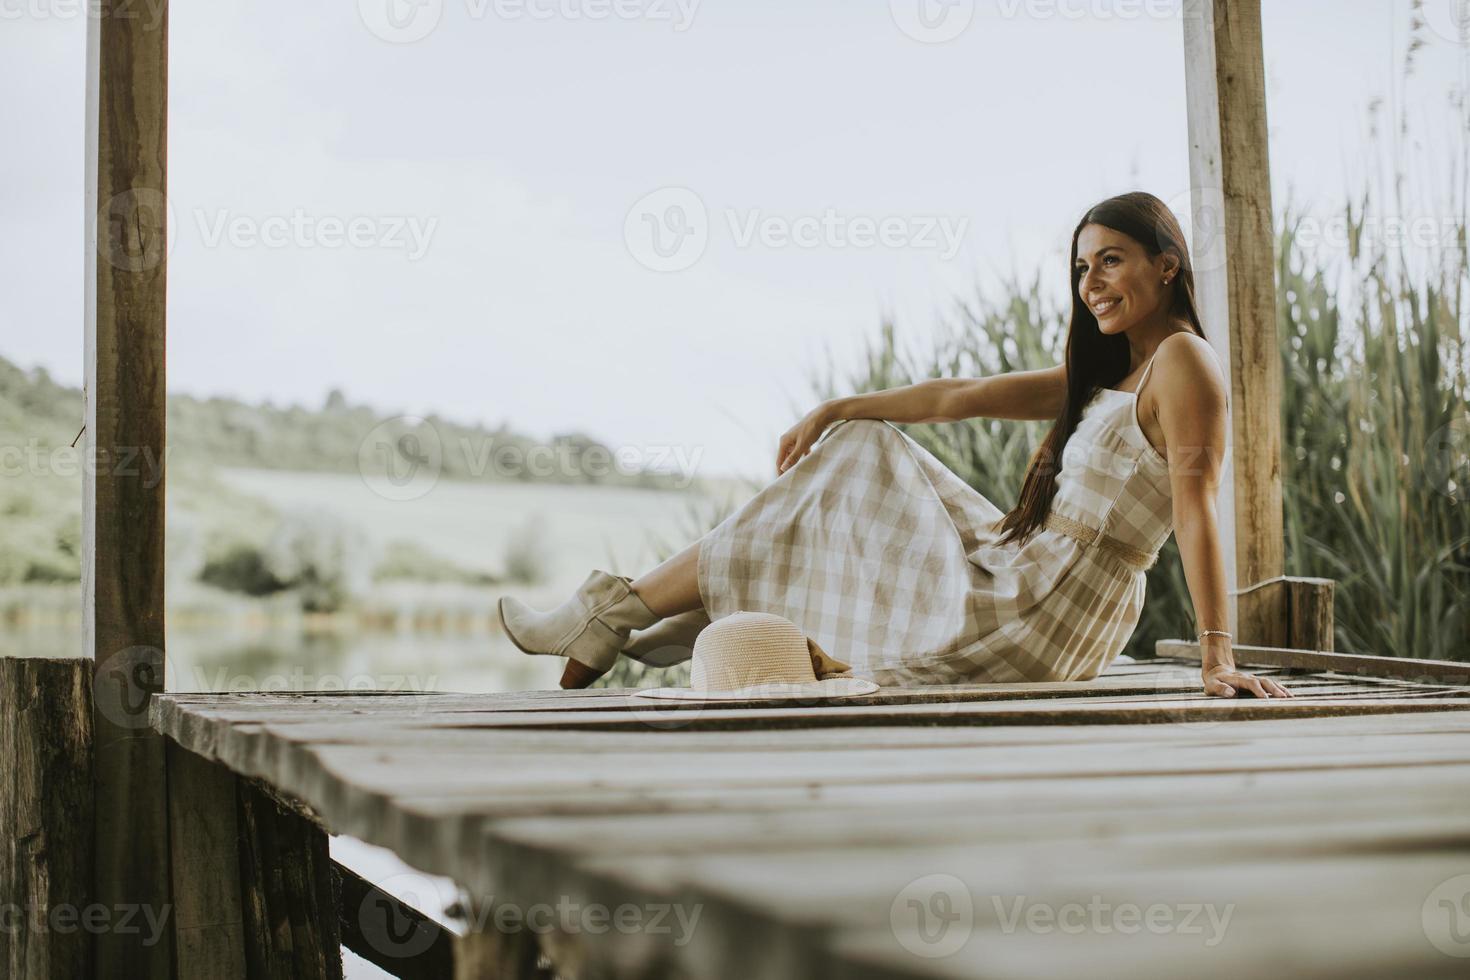 jovem relaxante no cais de madeira no lago foto